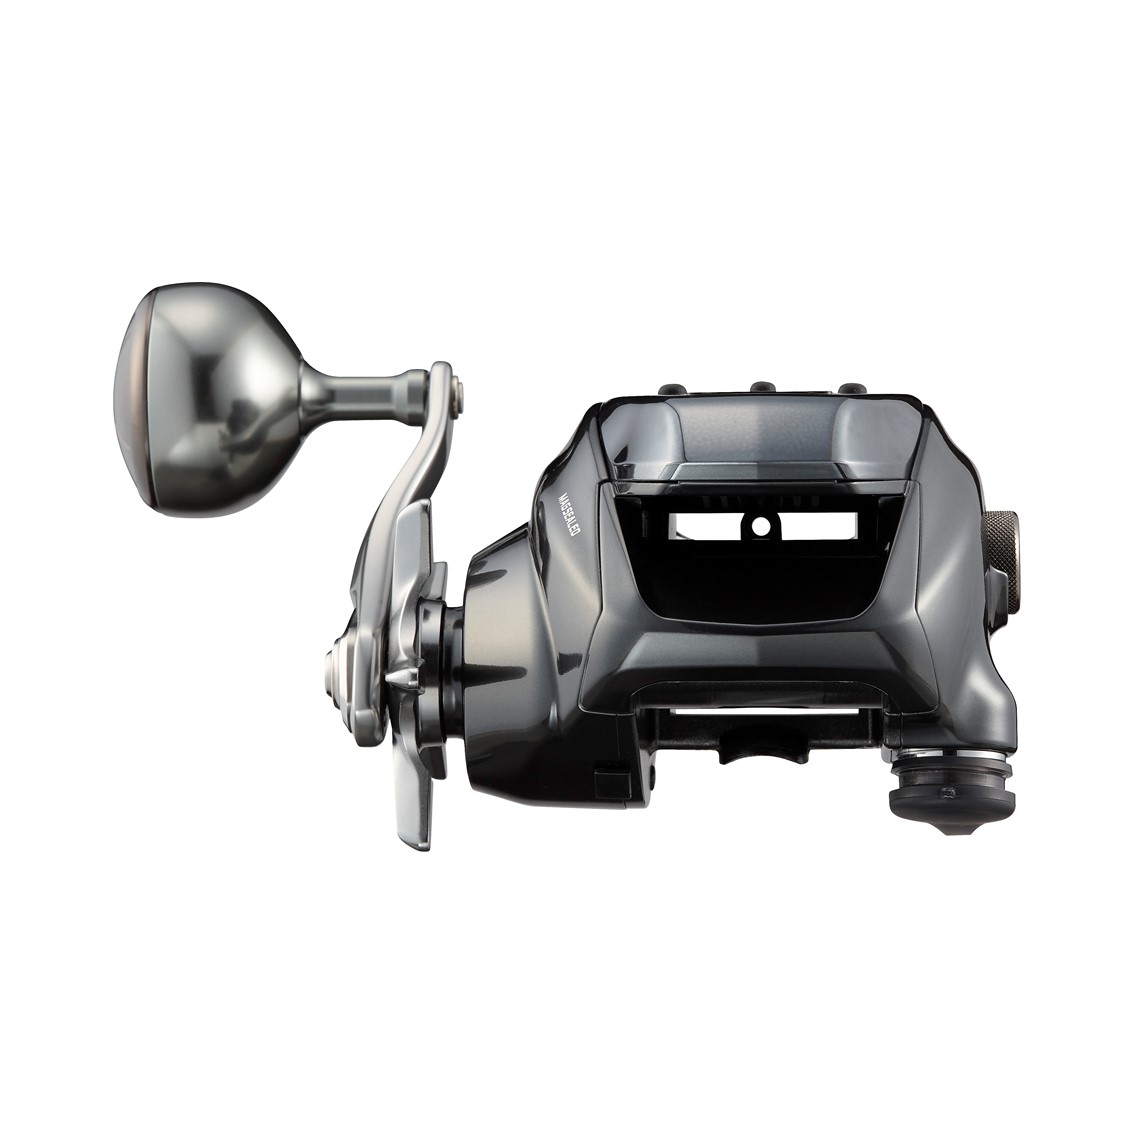 ダイワ シーボーグ 300J 右ハンドル (電動リール) - 釣り具の販売、通販なら、フィッシング遊-WEB本店 ダイワ／シマノ／がまかつの